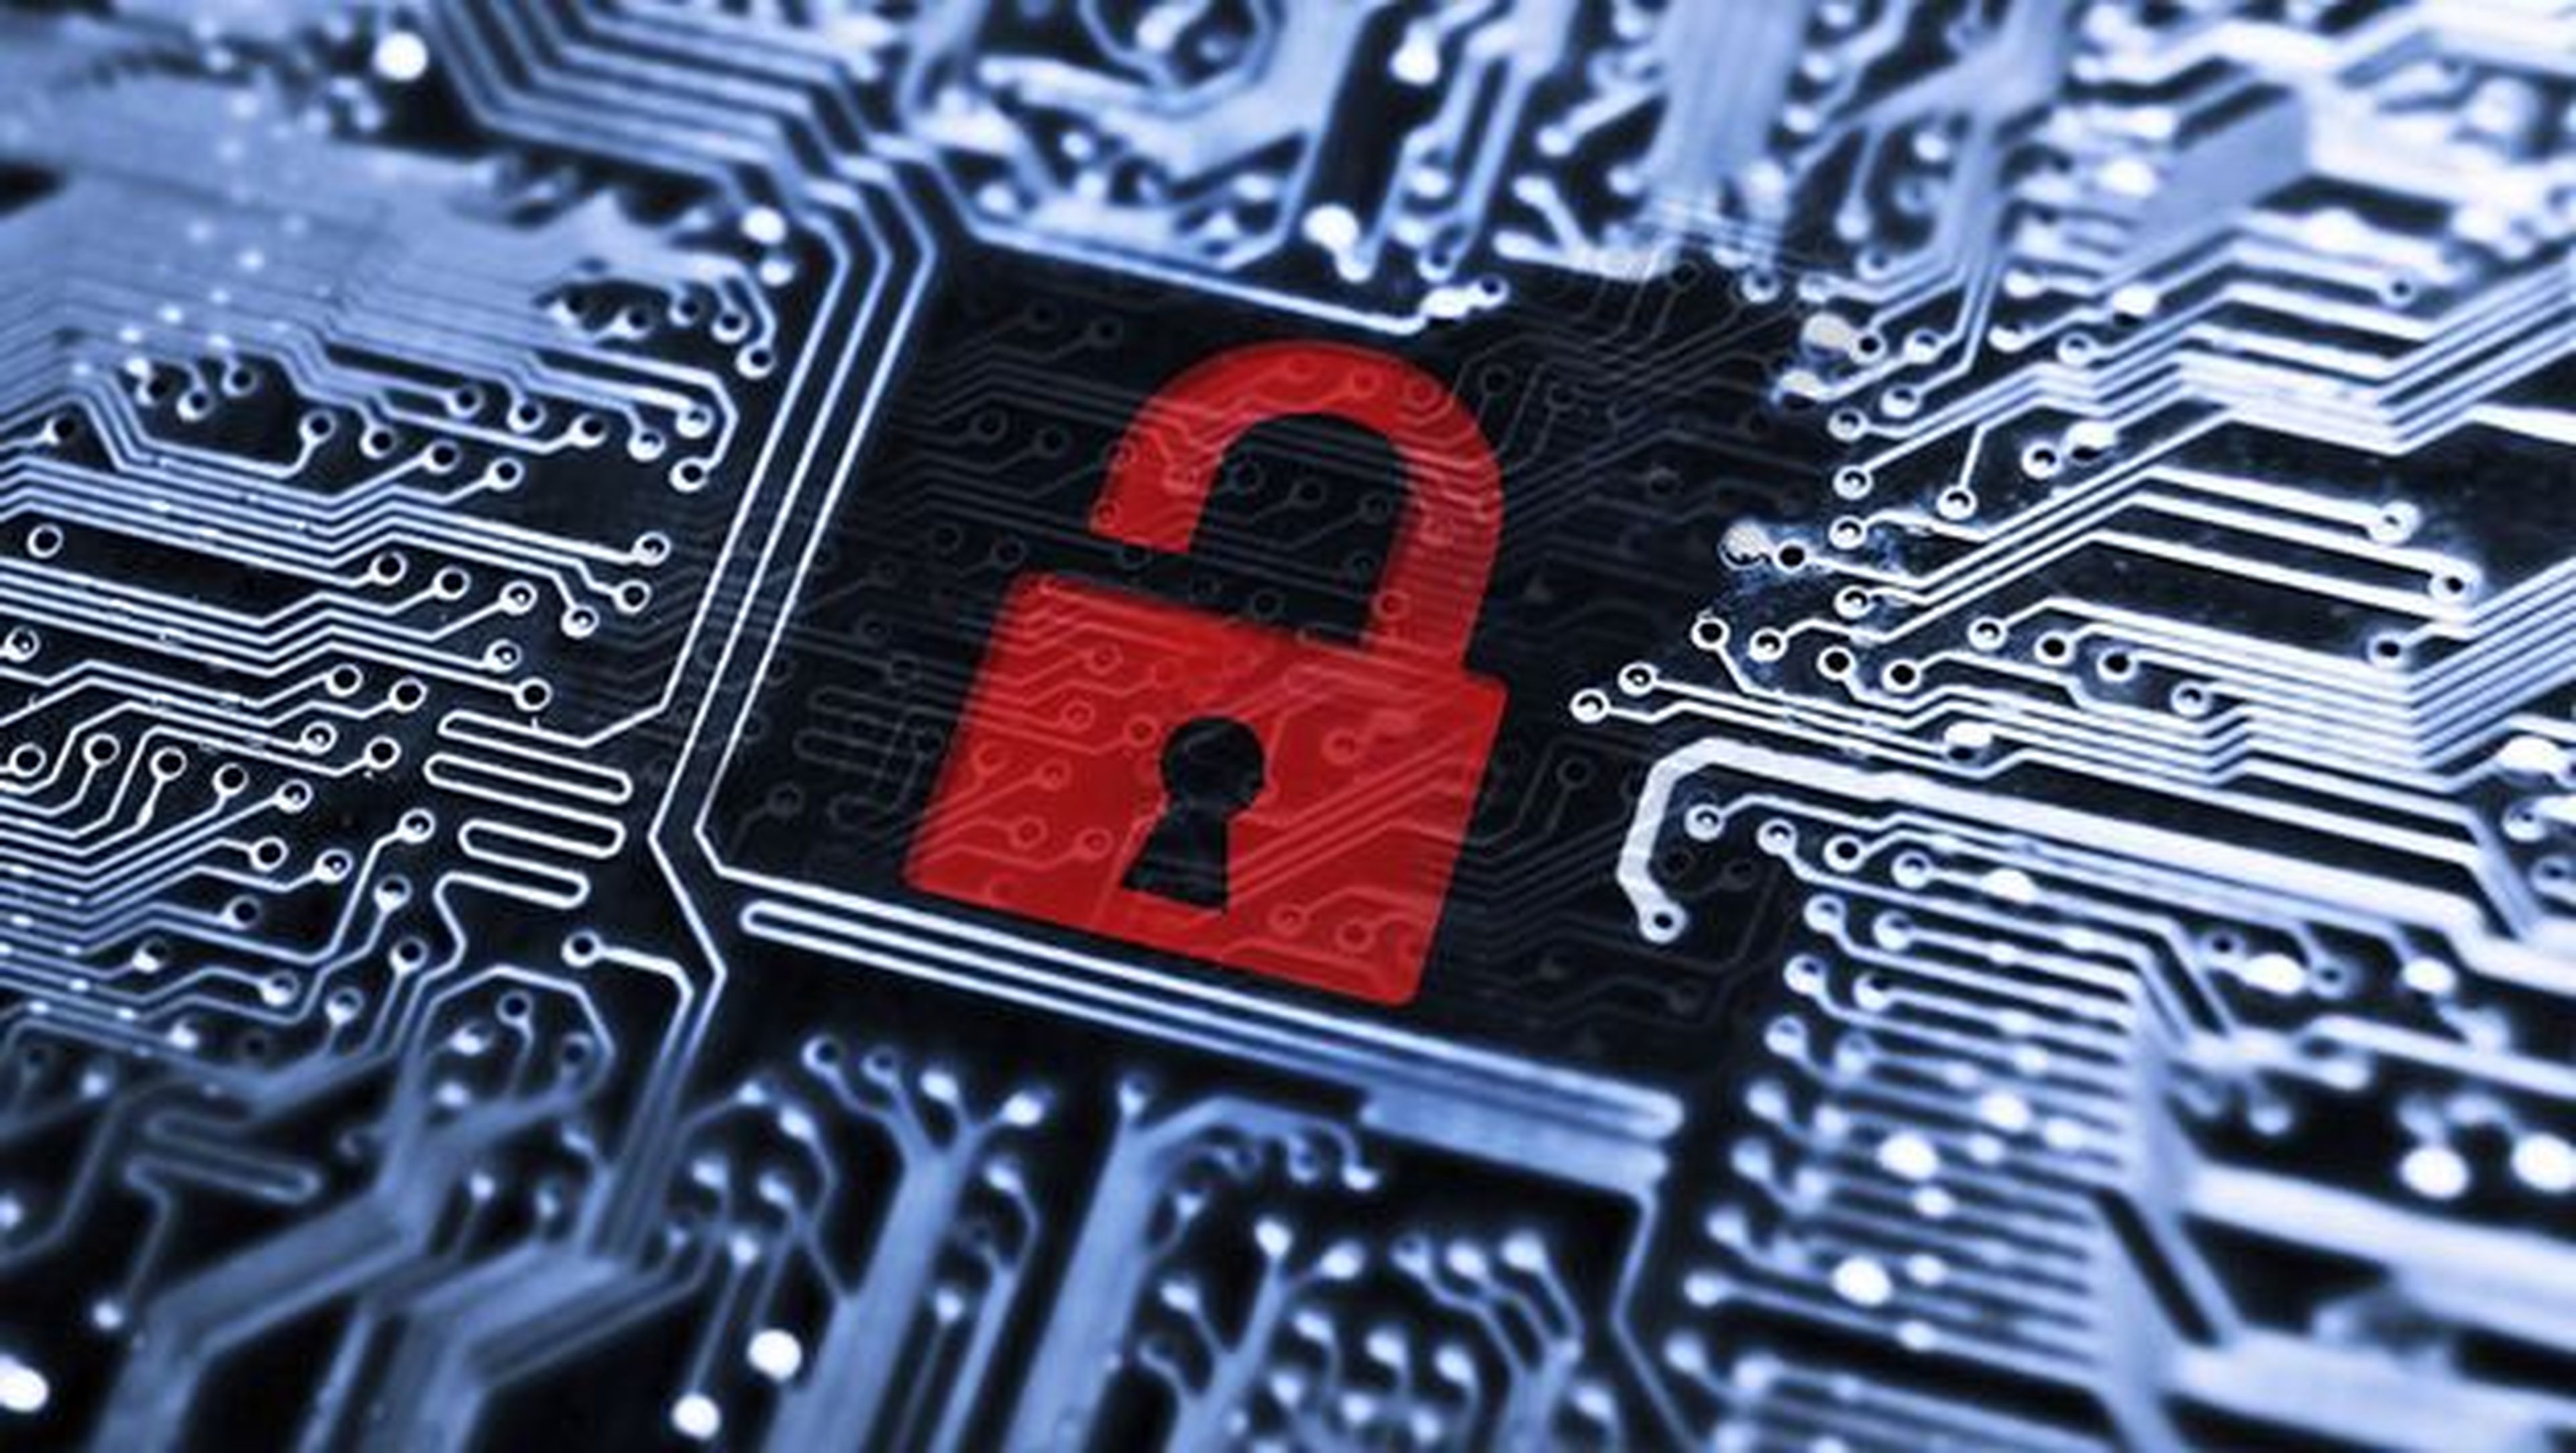 Webs de contenidos pirata ganan millones al año por instalar malware